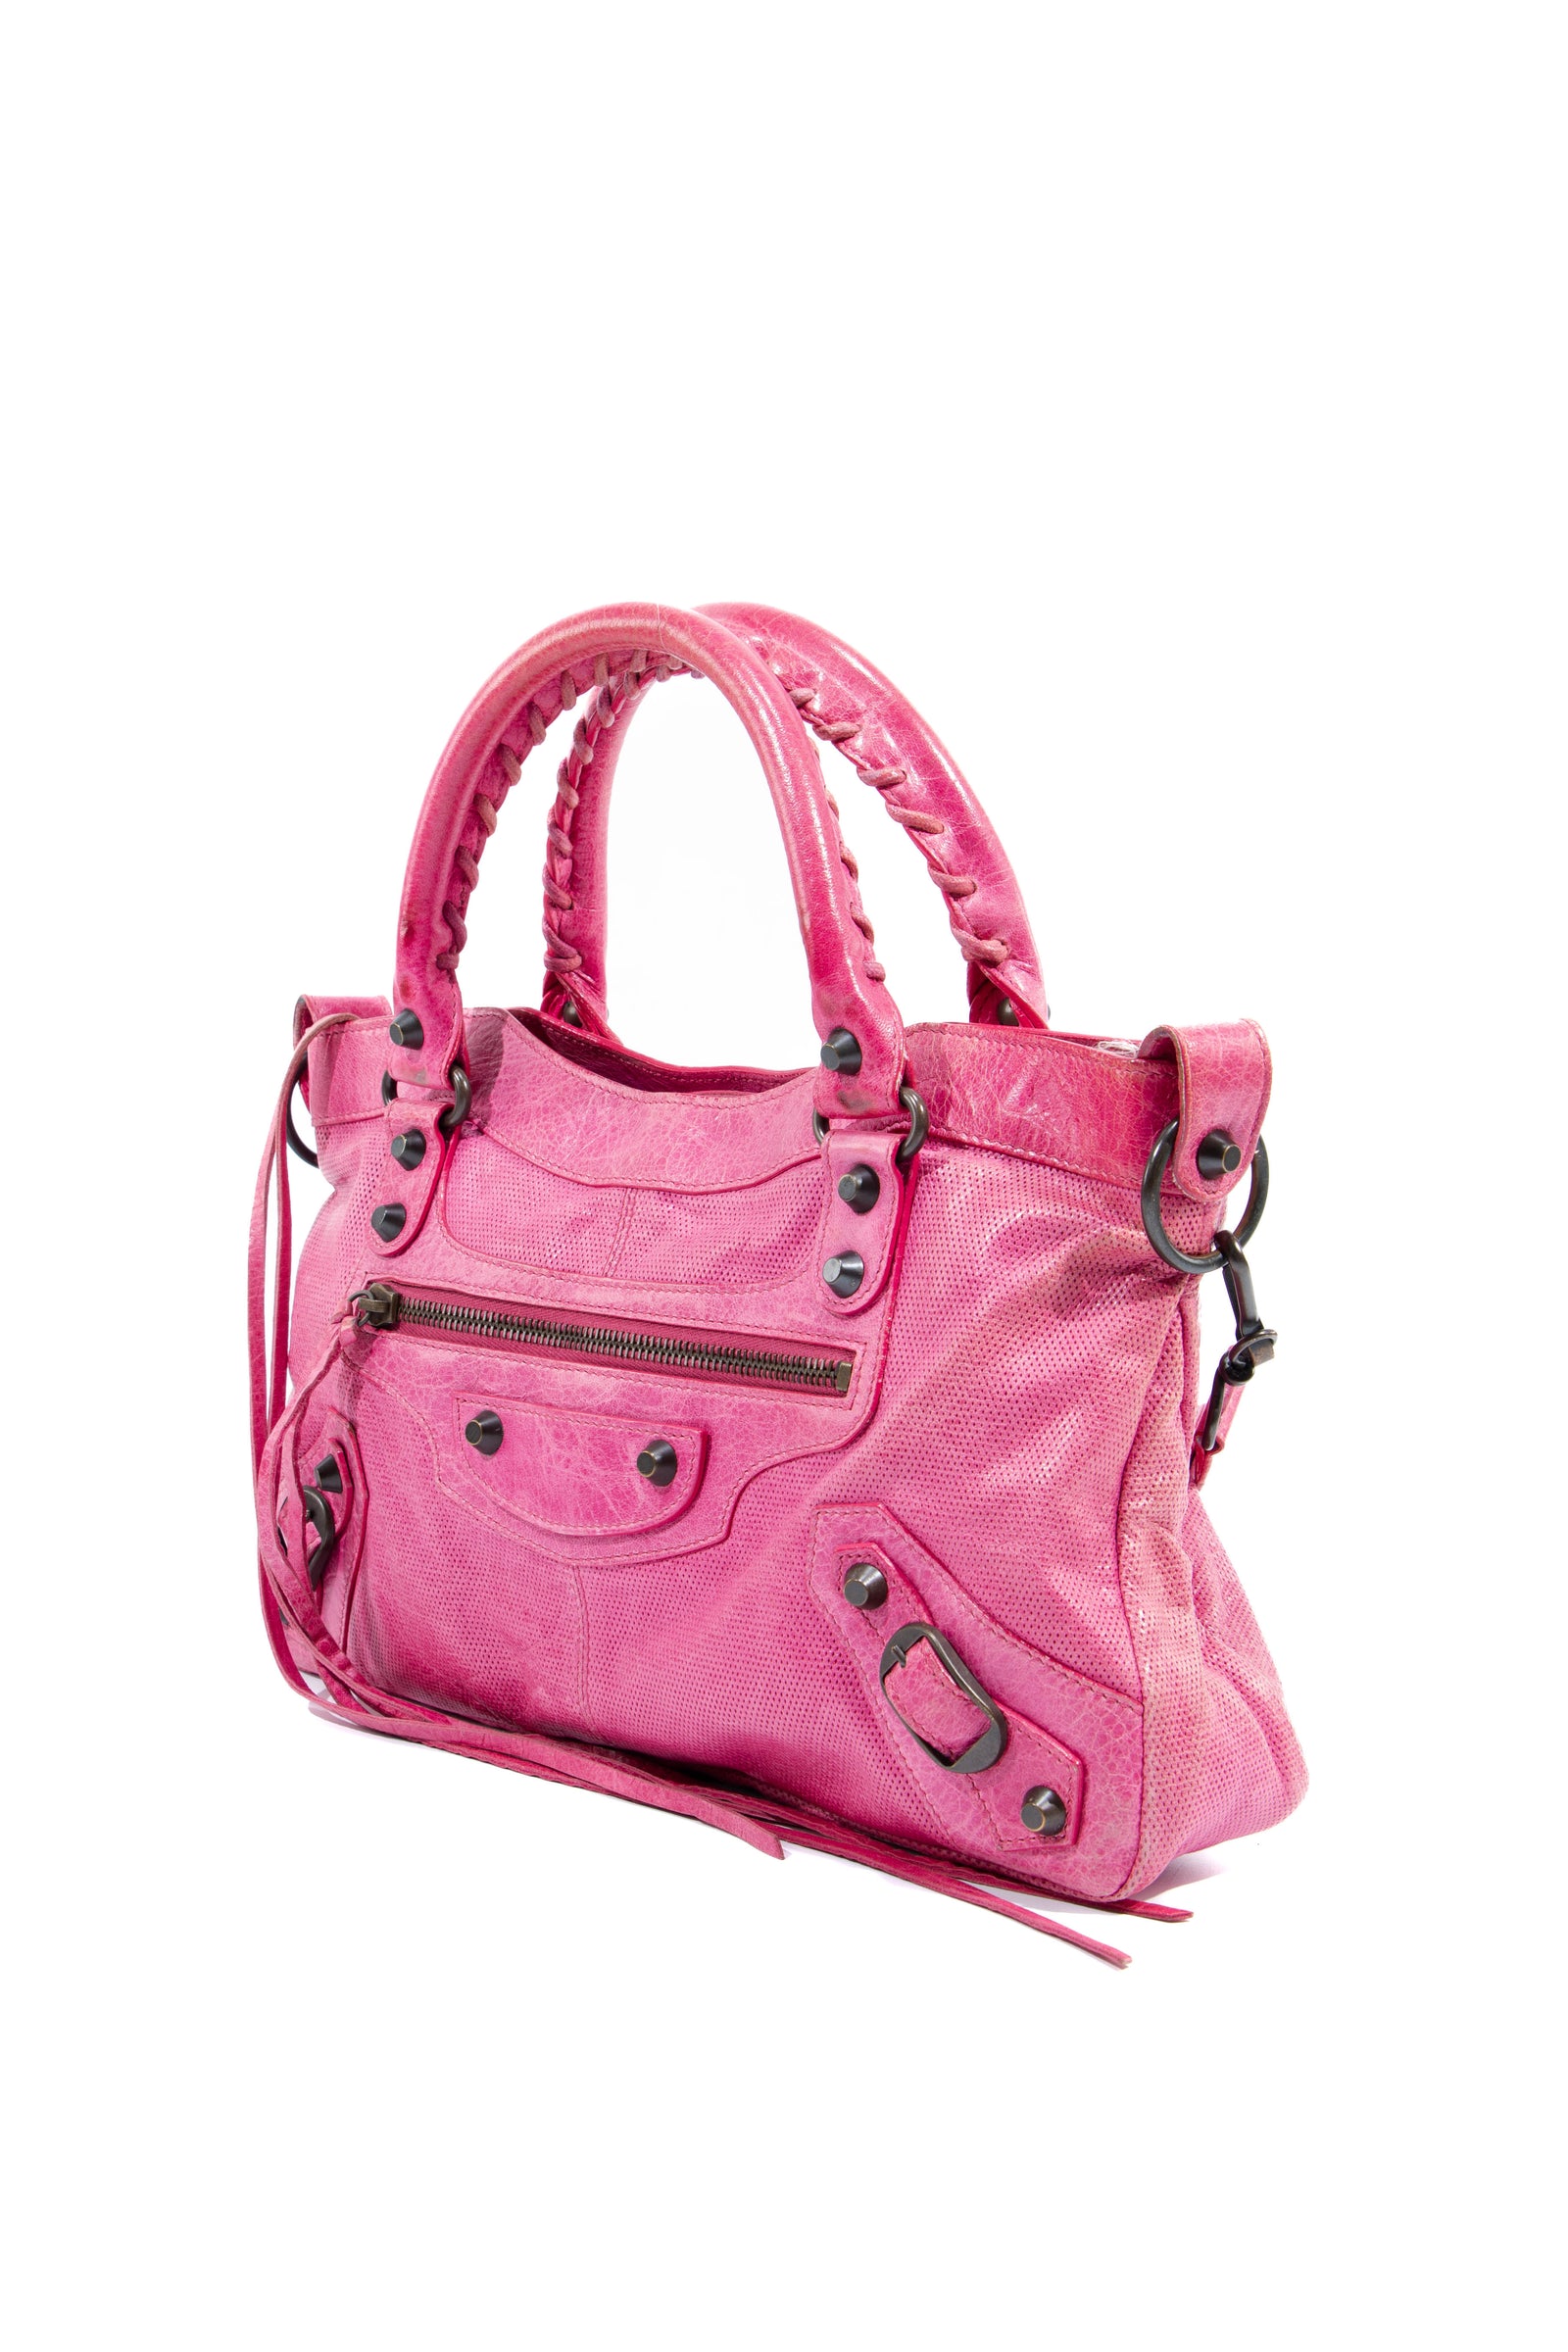 Balenciaga Bags - Find your next Balenciaga Bag at Collector's